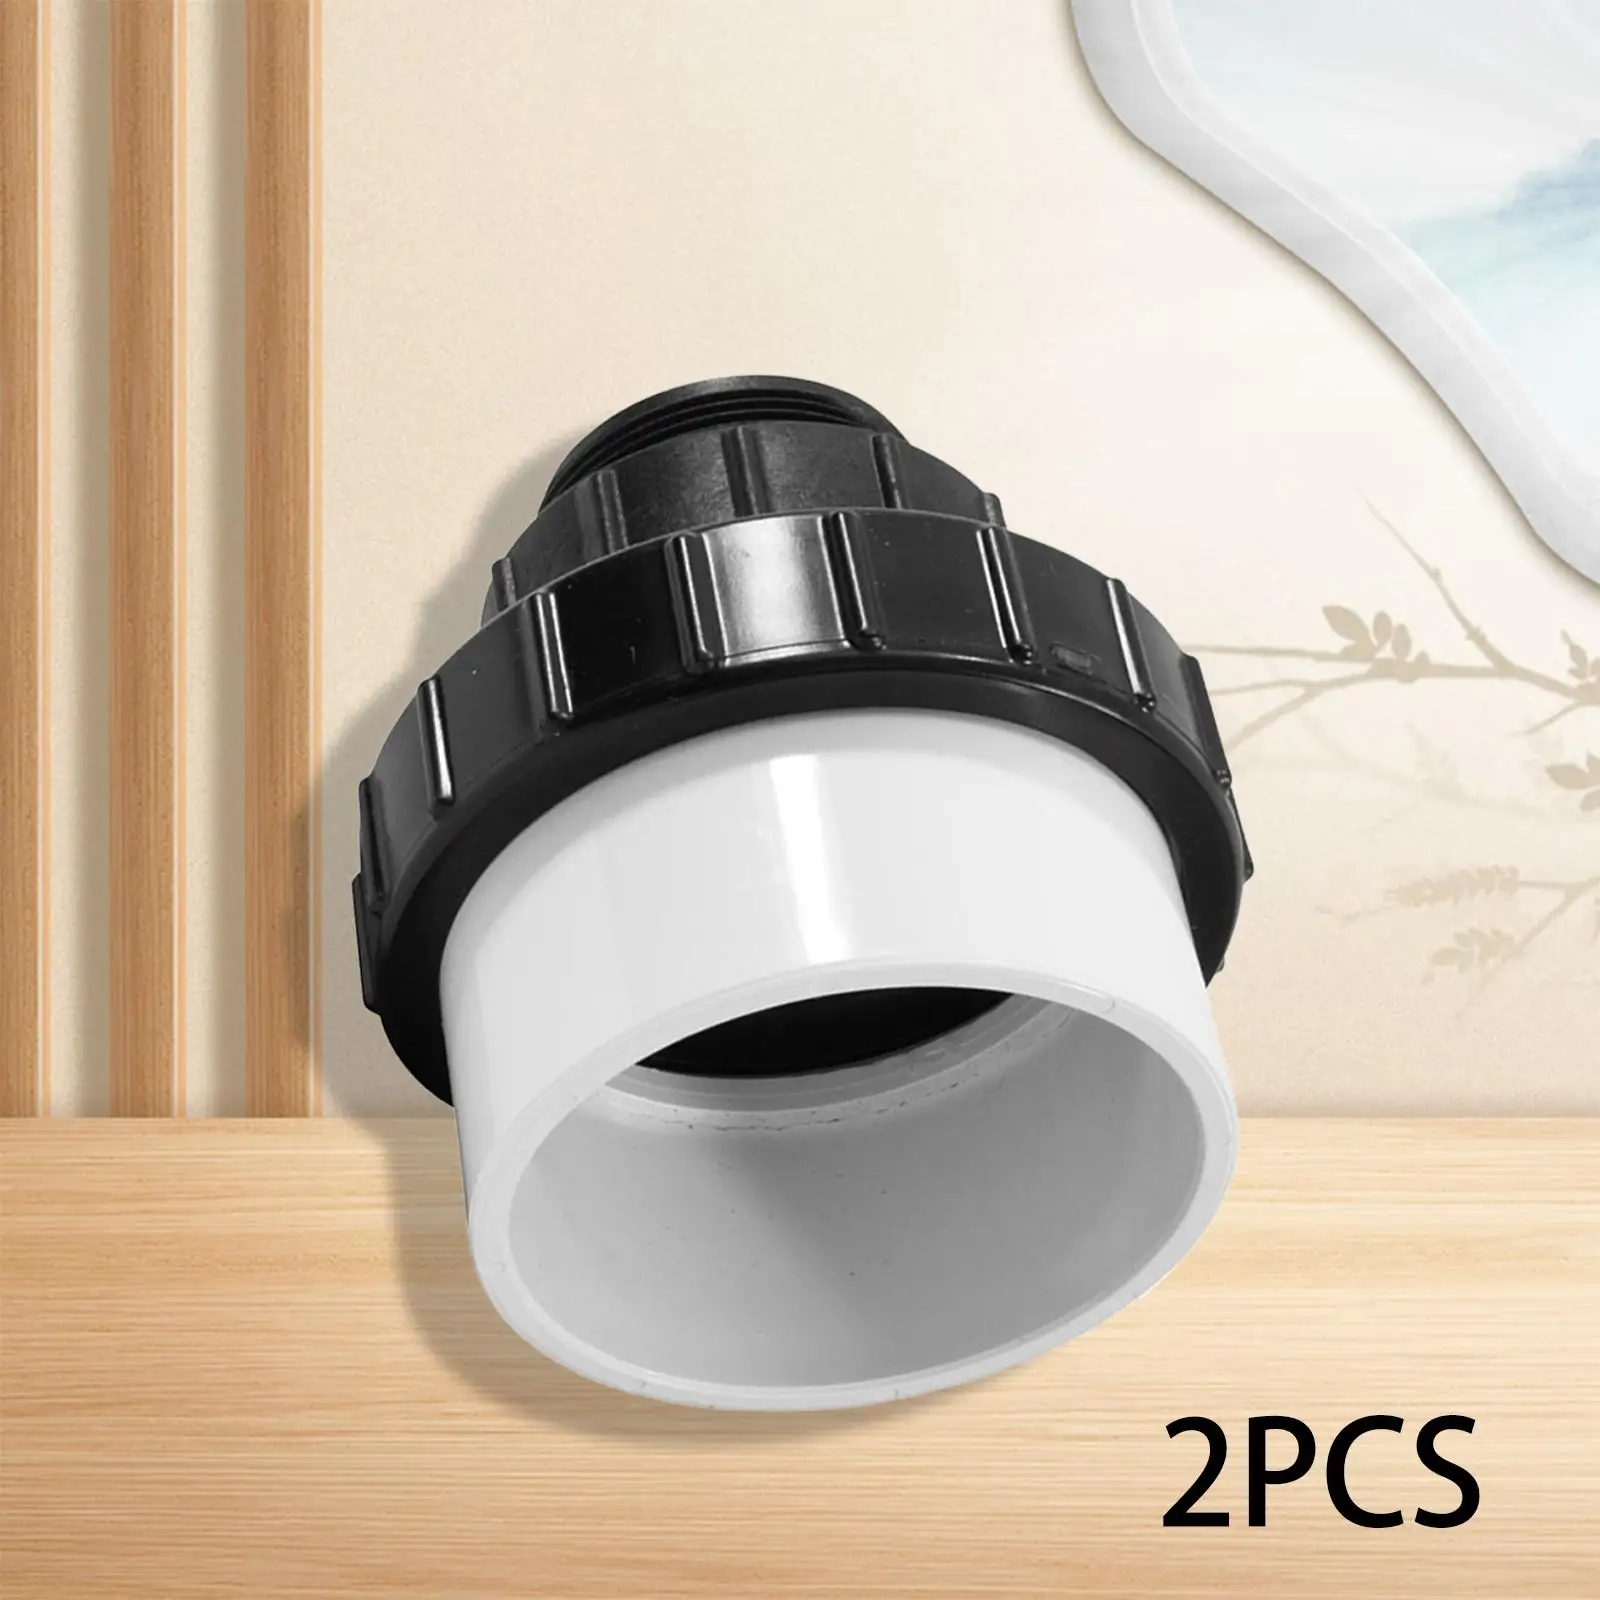 2Pcs High Temperature Union Accessories Premium Easy to Use 21063-150-000